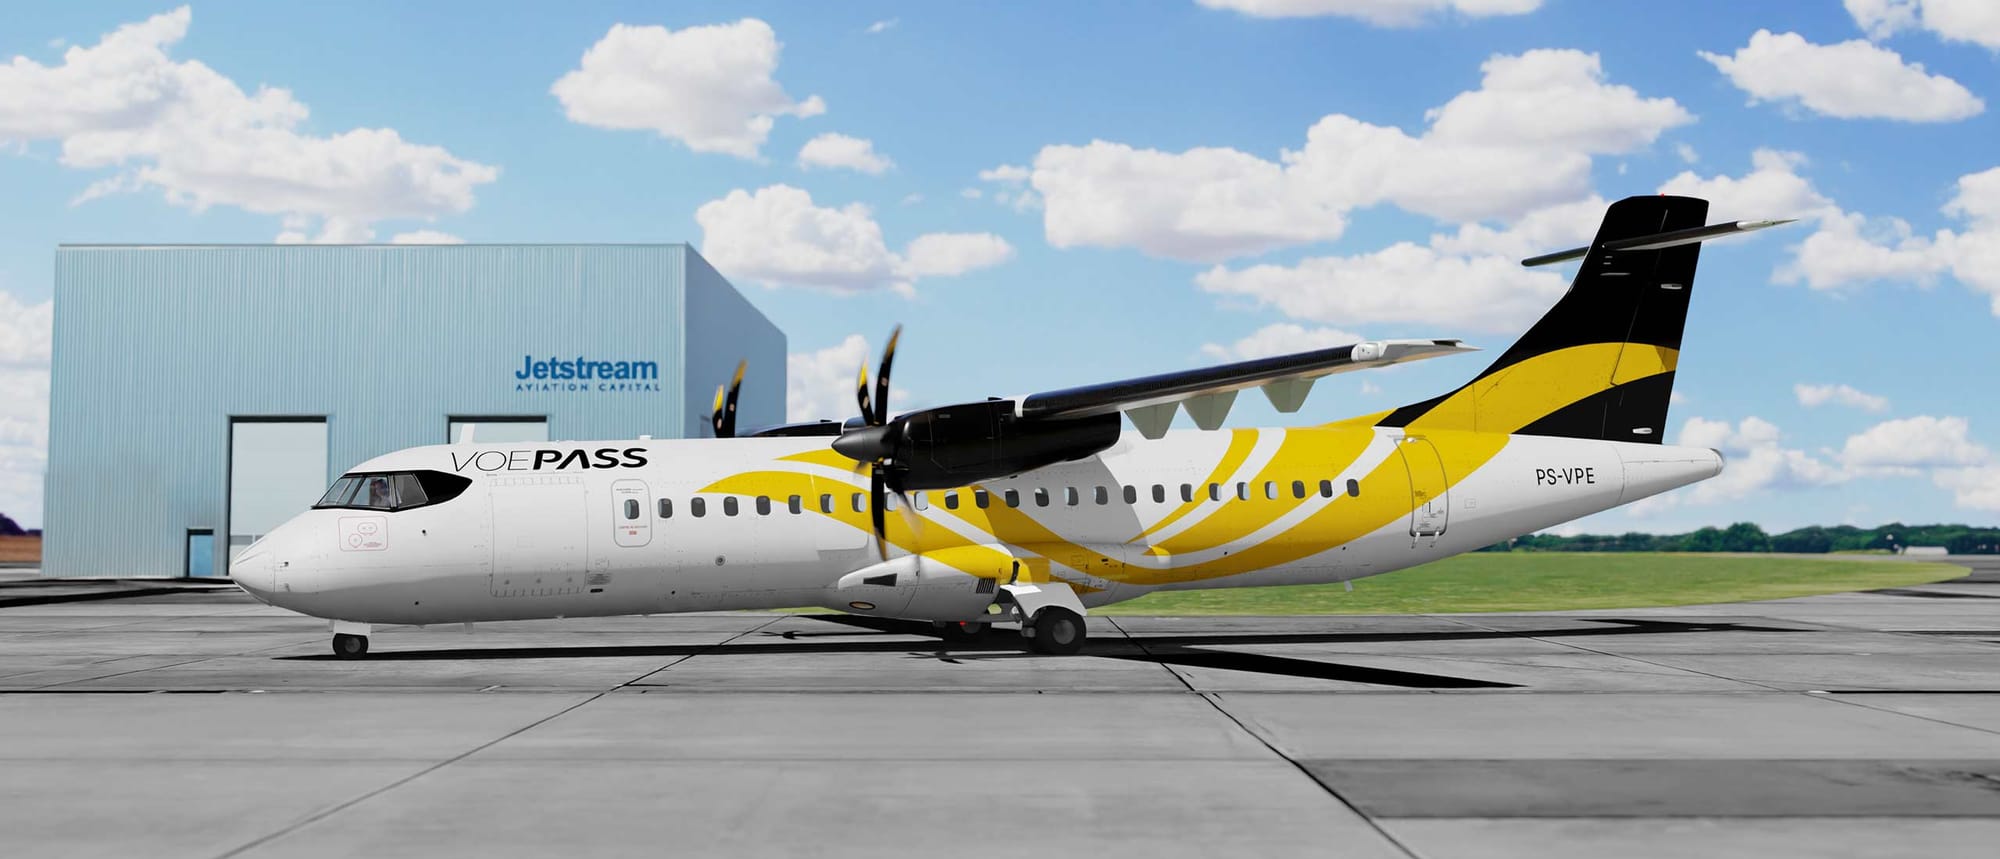 Jetstream Aviation Capital delivers ATR72 to Voepass Linhas Aereas